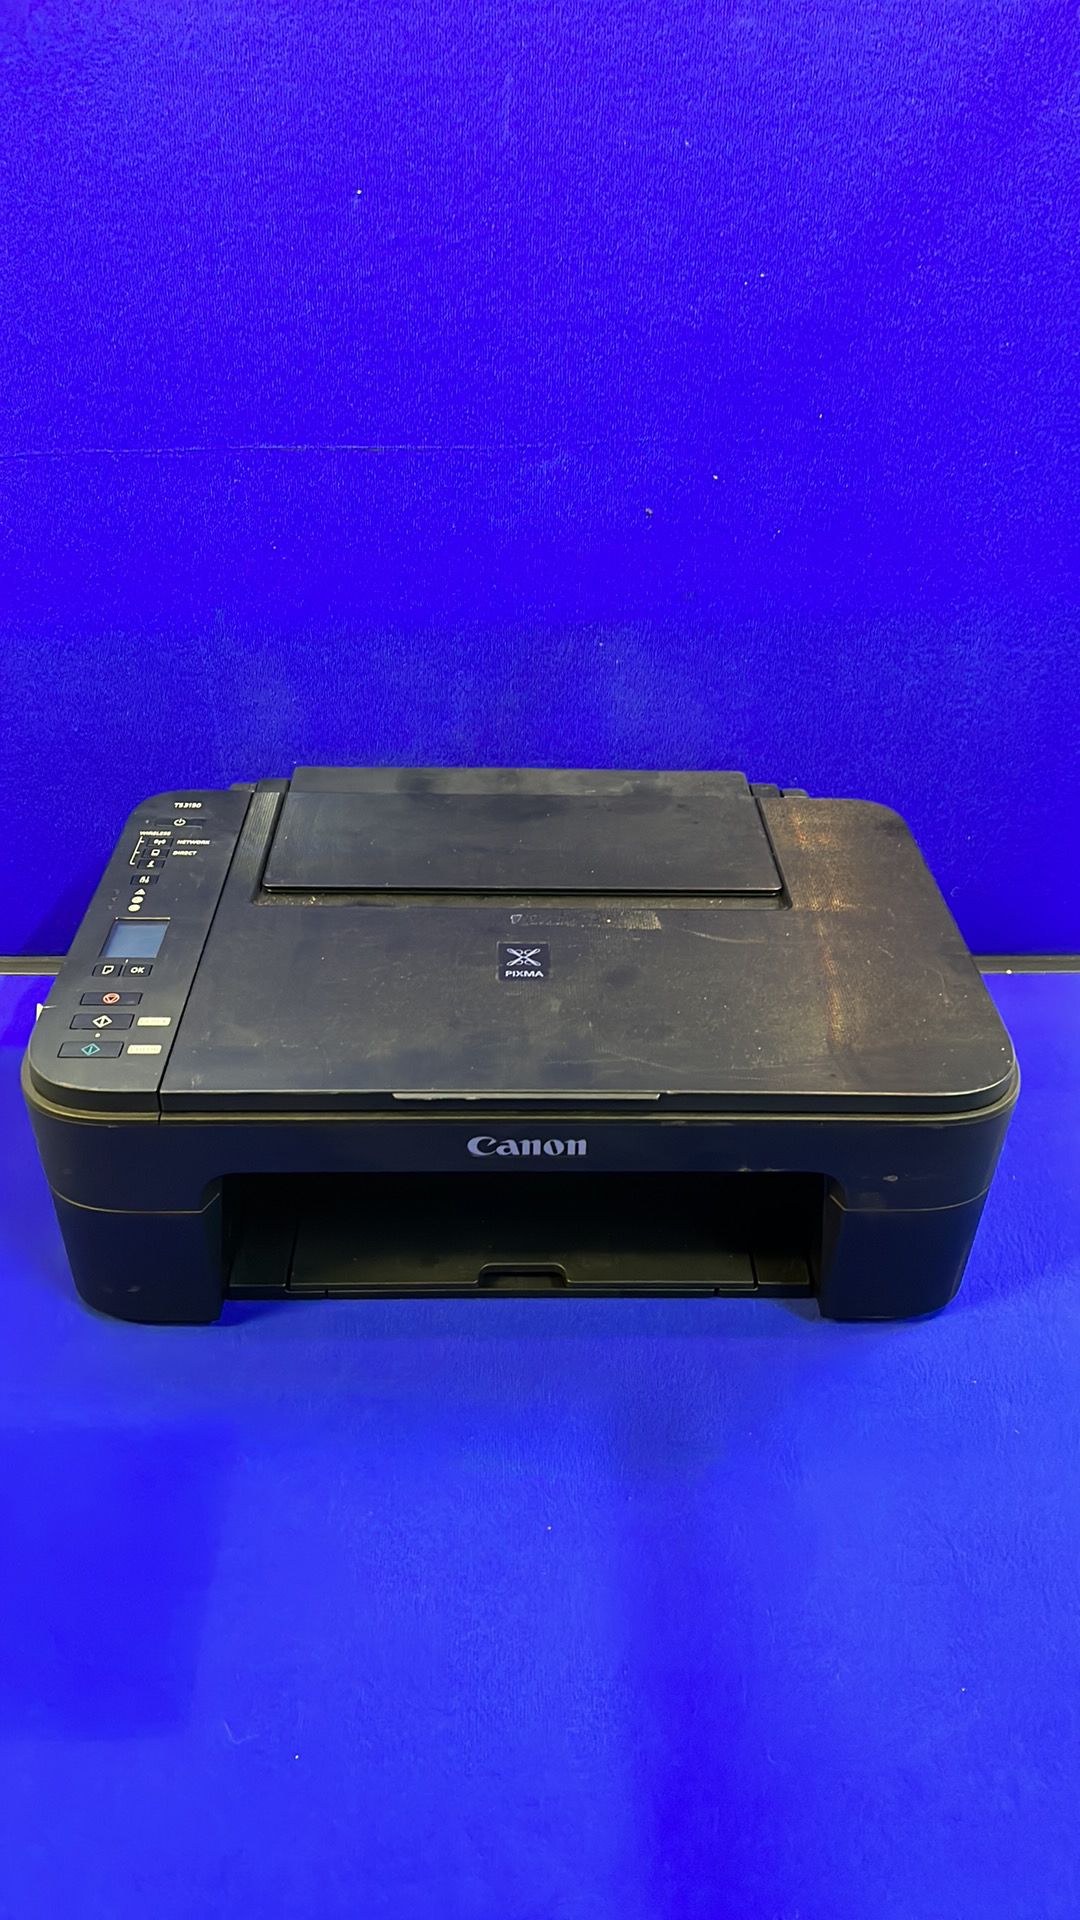 Cannon TS3150 LaserJet Printer